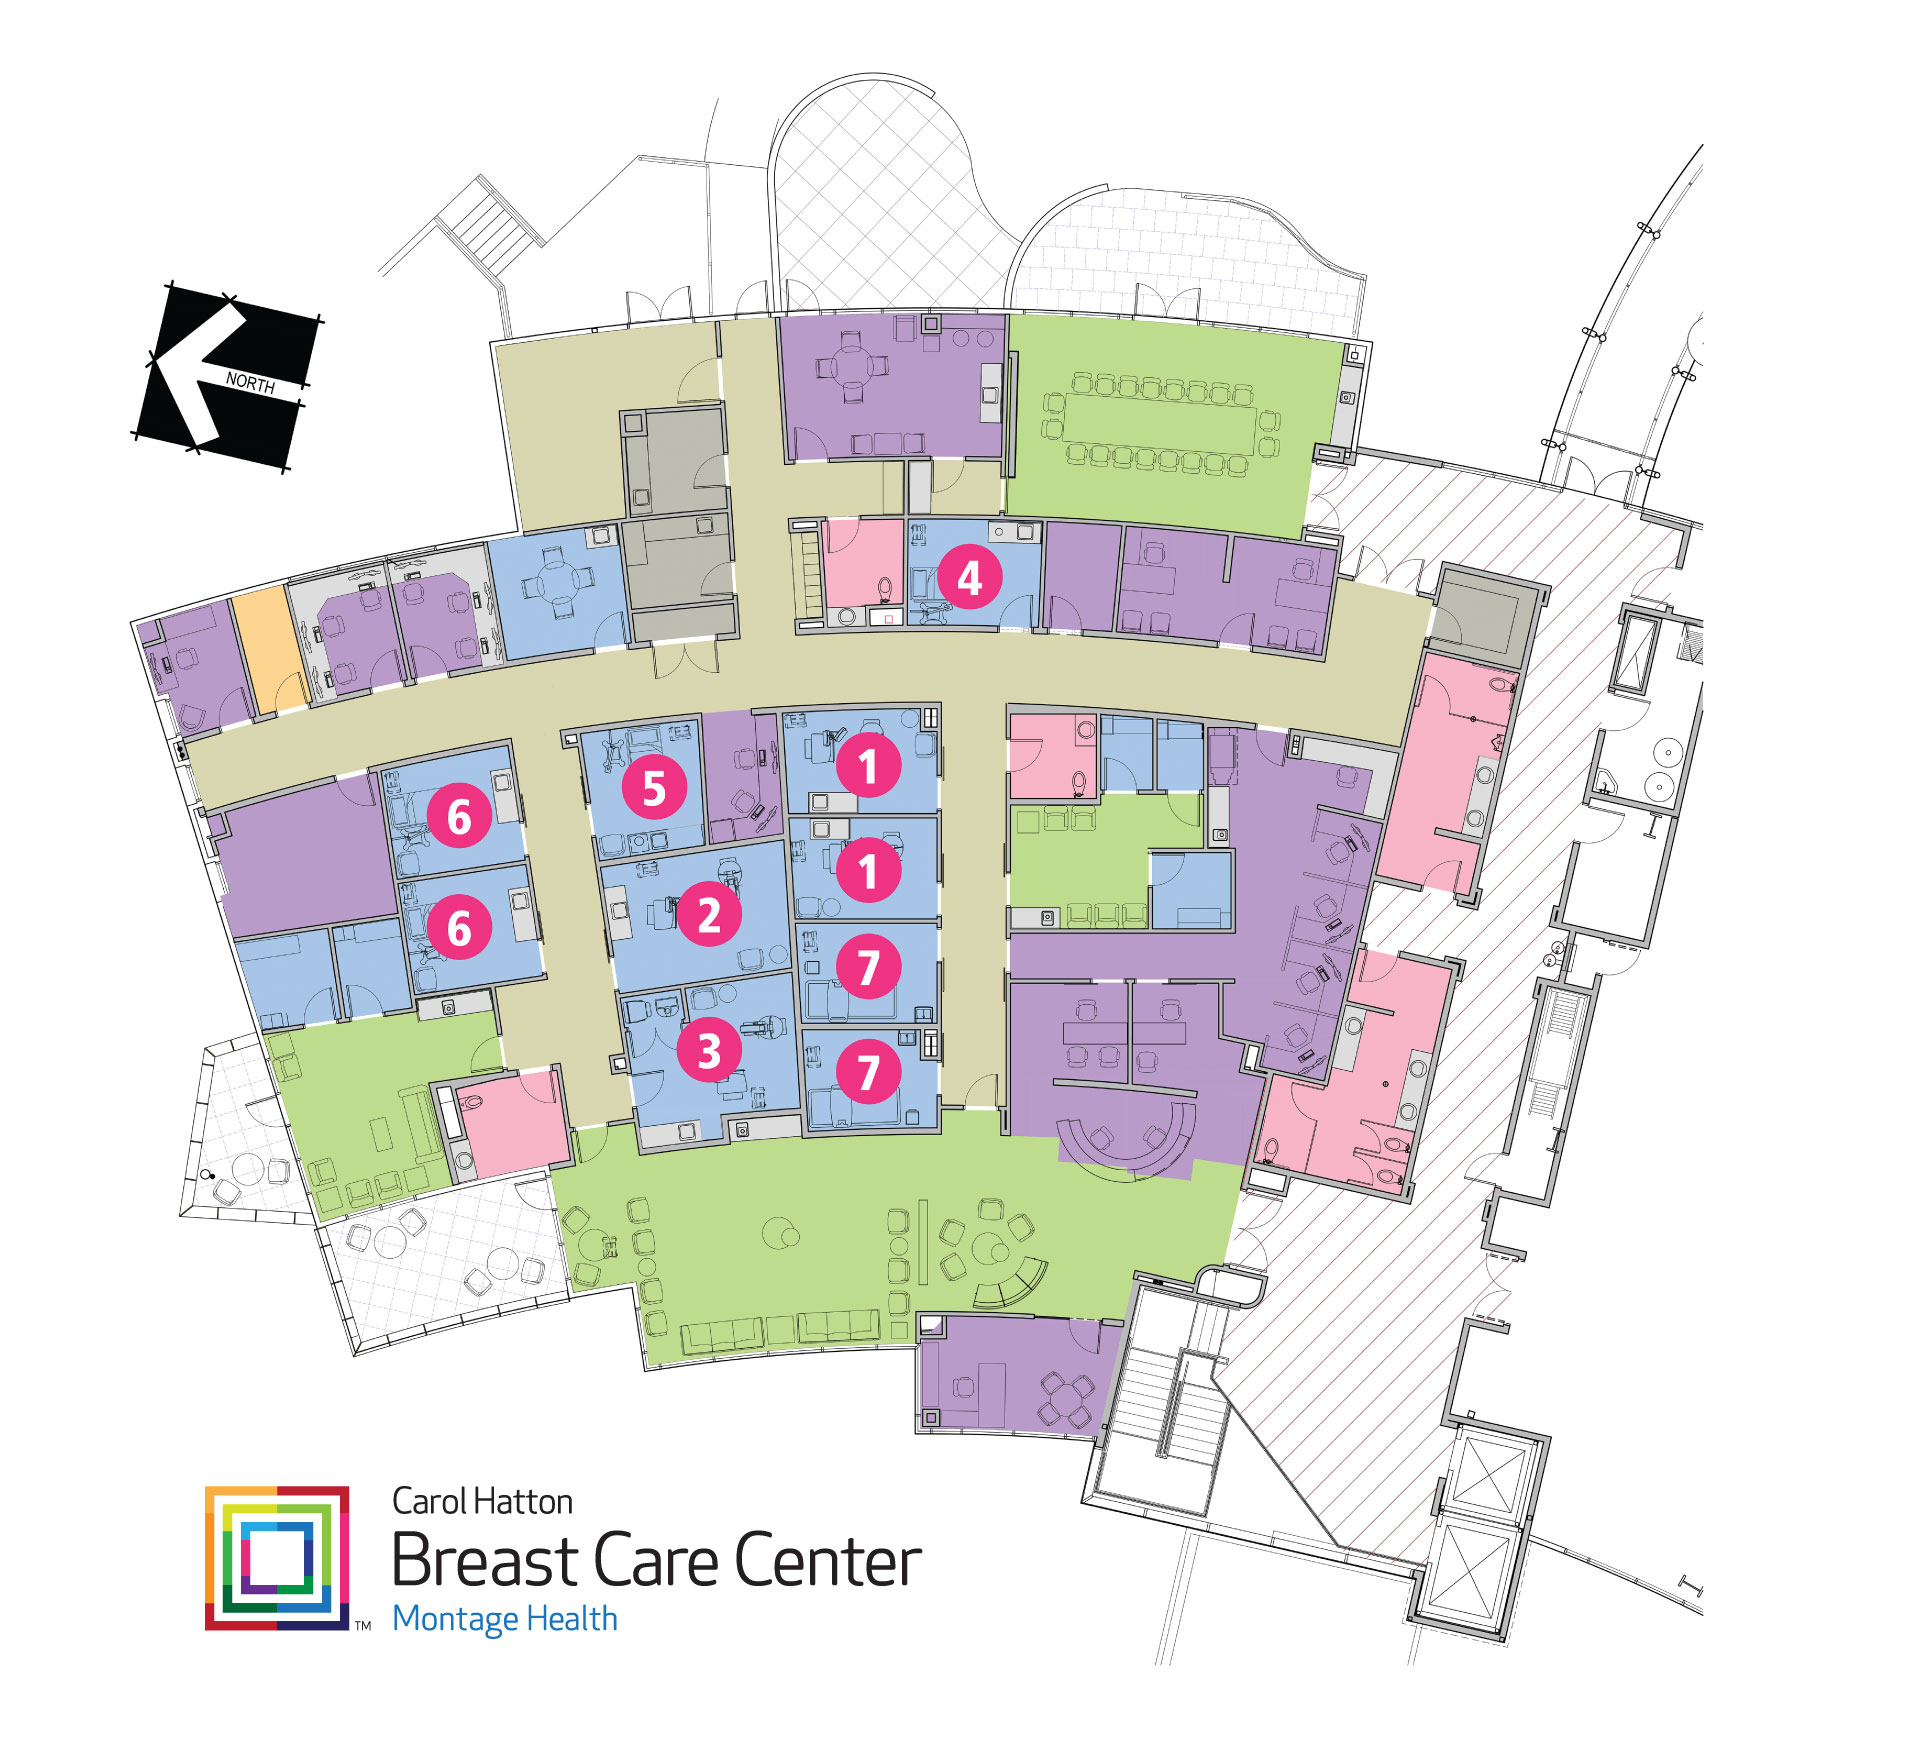 Carol Hatton Breast Care Center